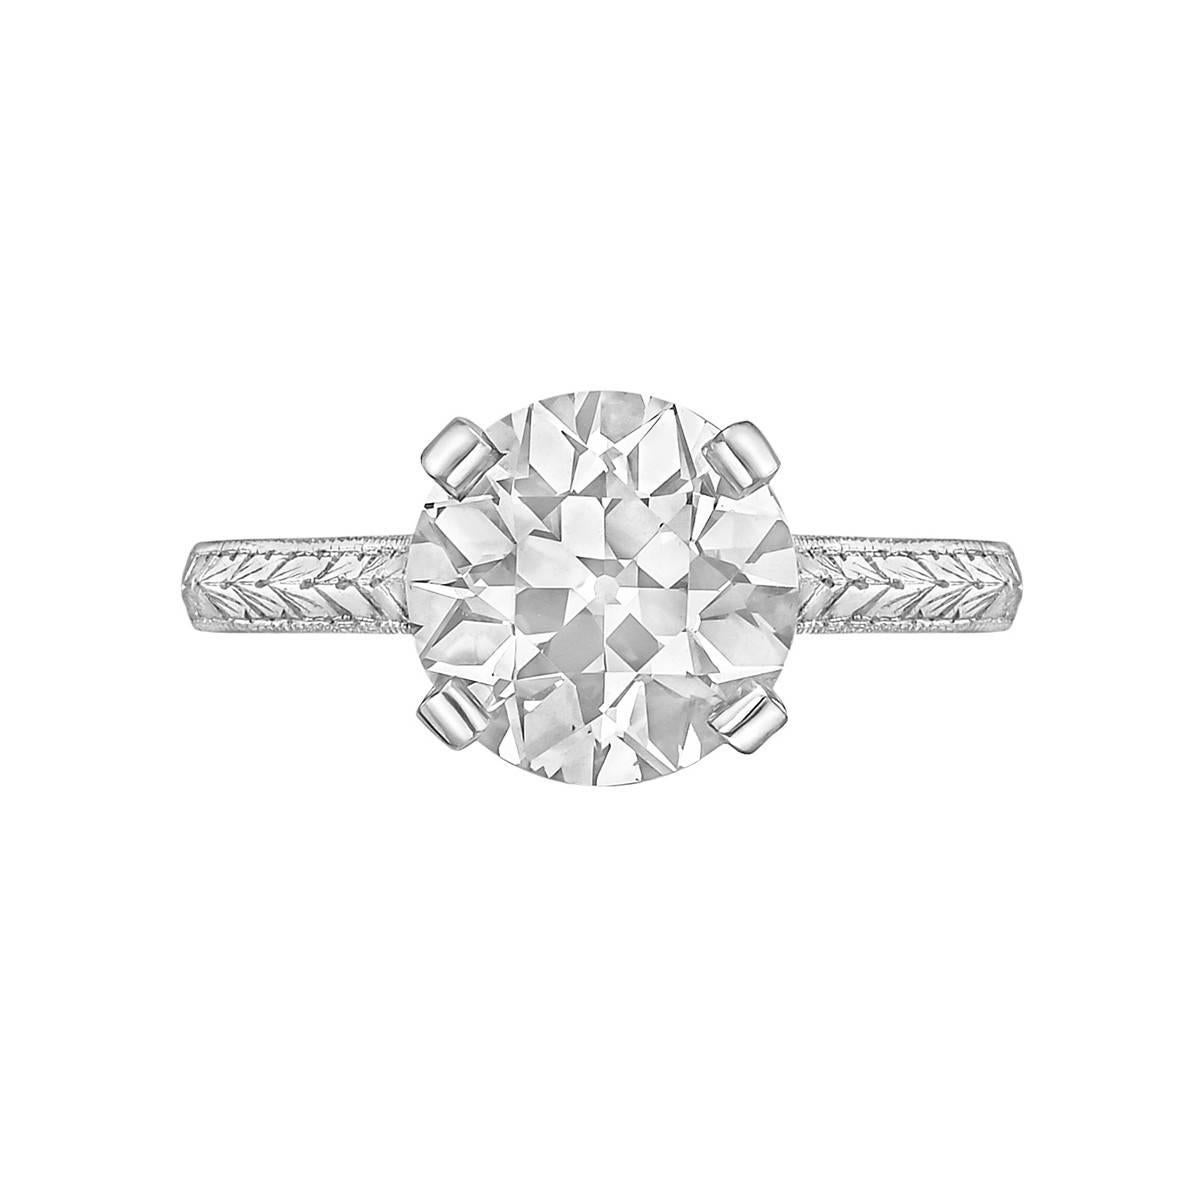 Betteridge 2.54 Carat Old European-Cut Diamond Ring